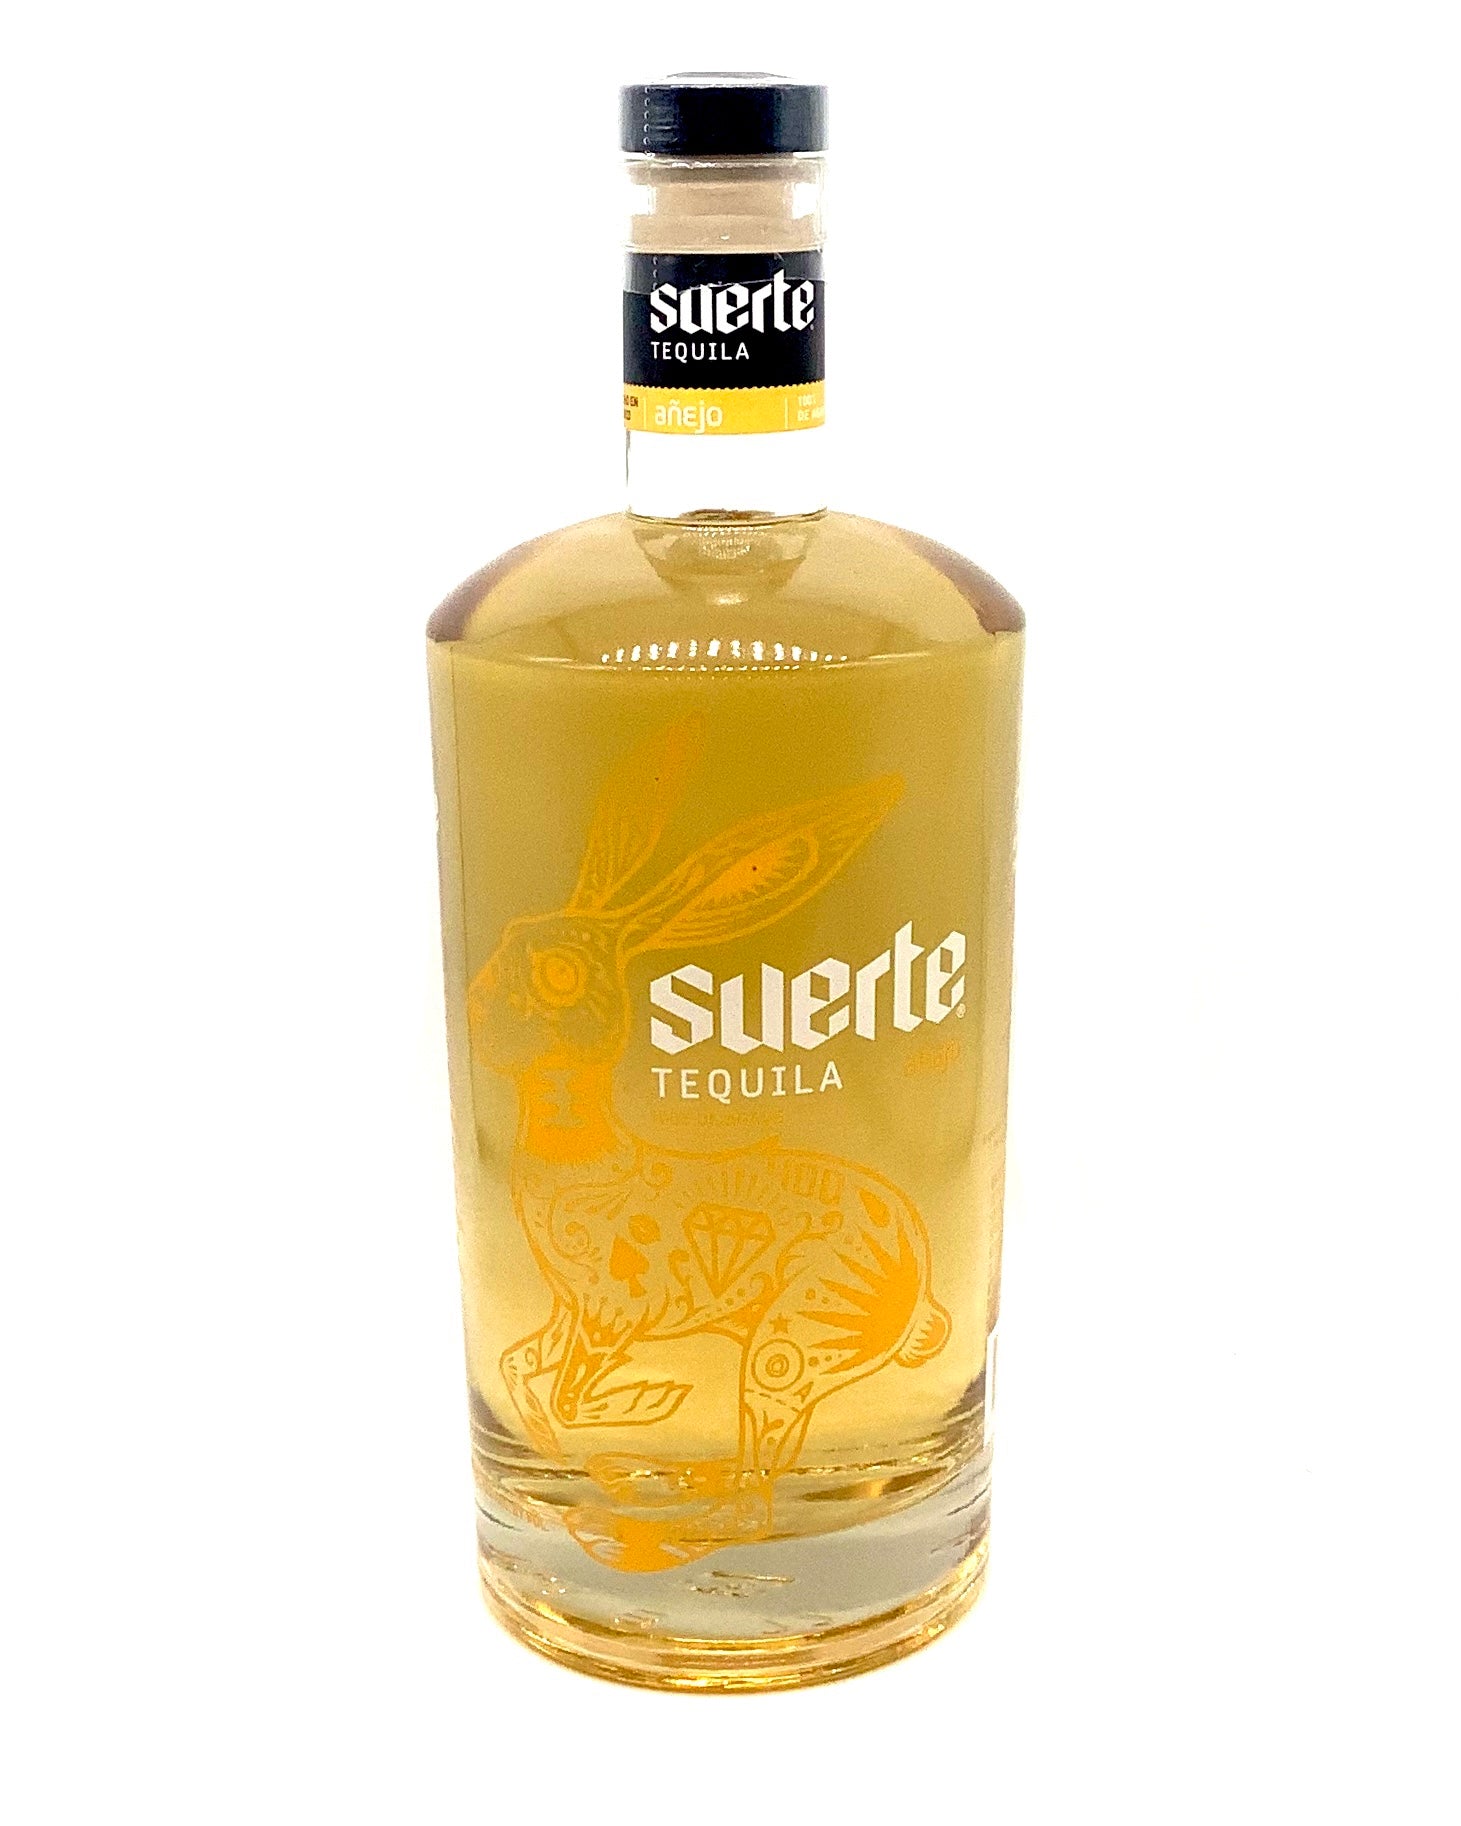 Suerte Tequila Añejo 750ml